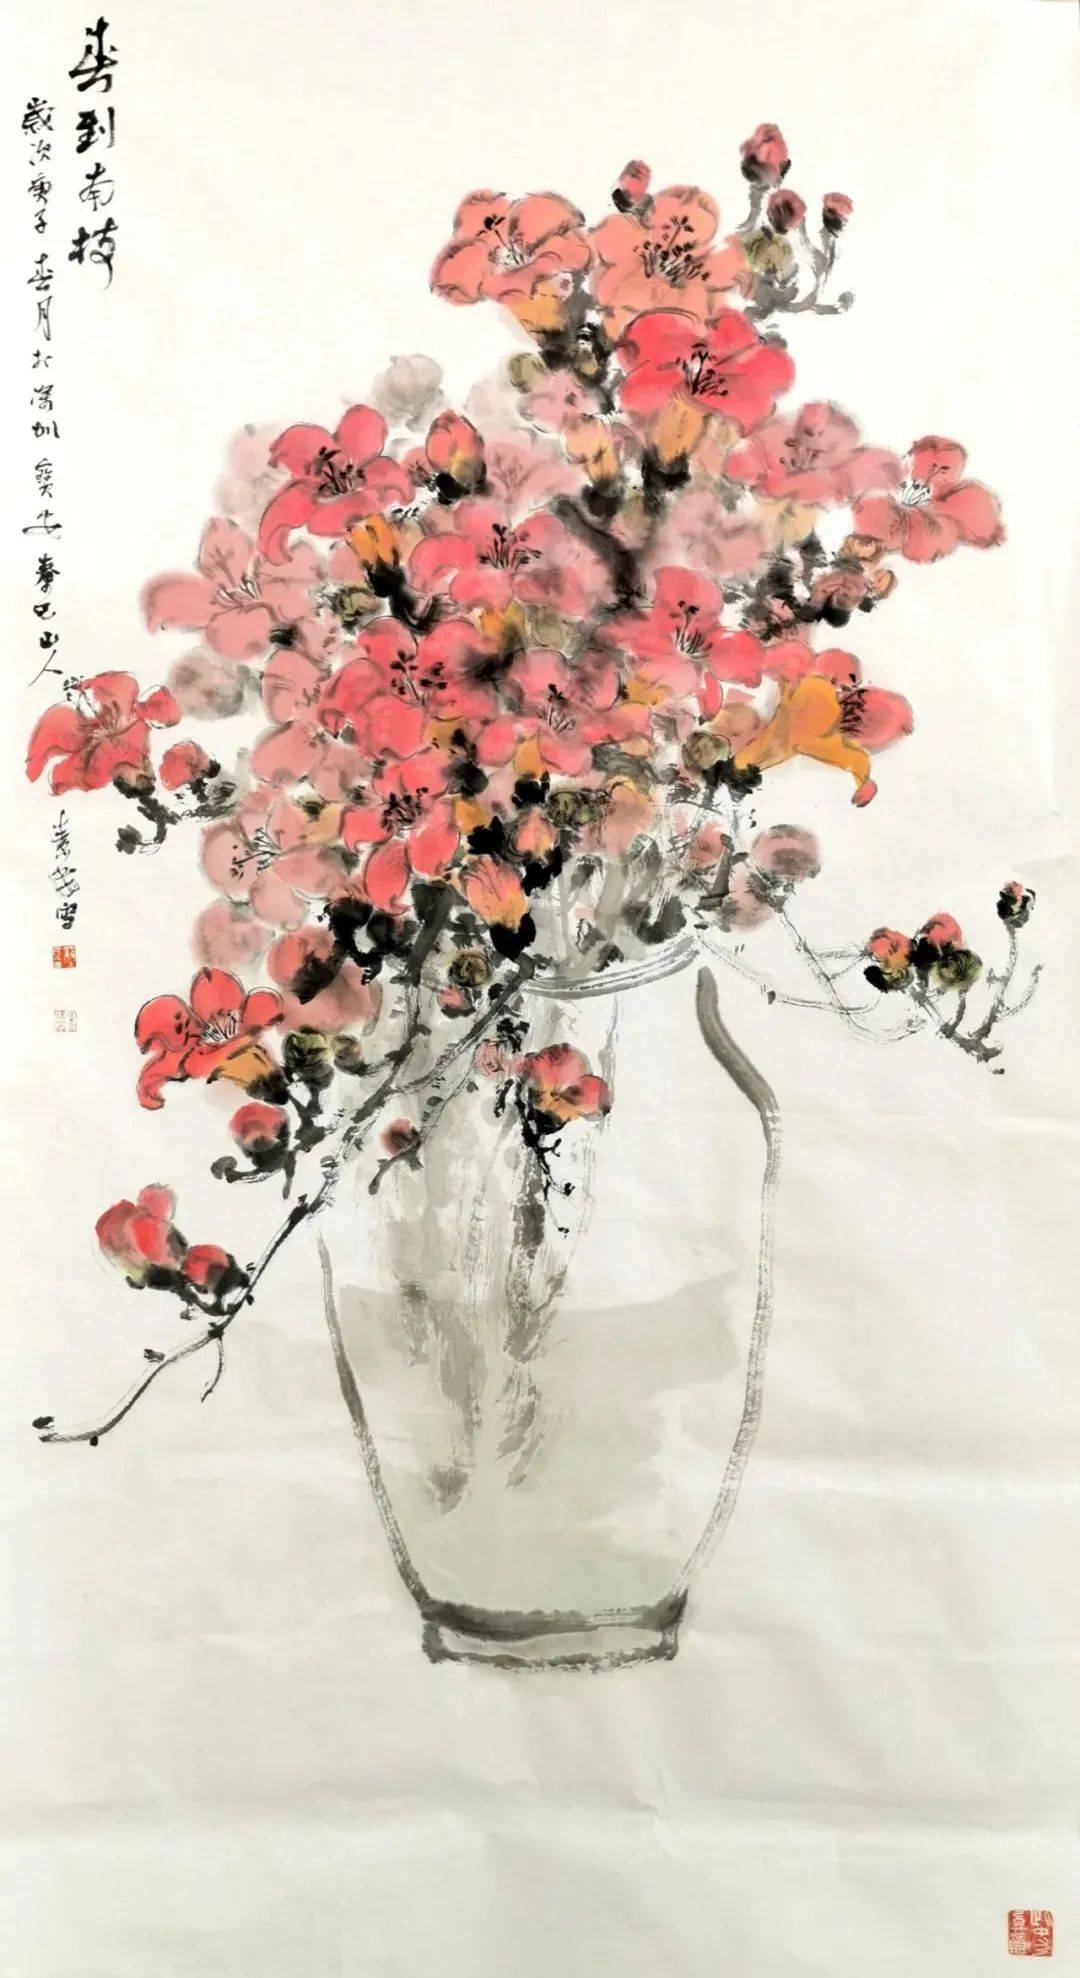 cm罗素民《大富贵》纸本设色 180cm×96cm赵贵元,毕业于西安美术学院